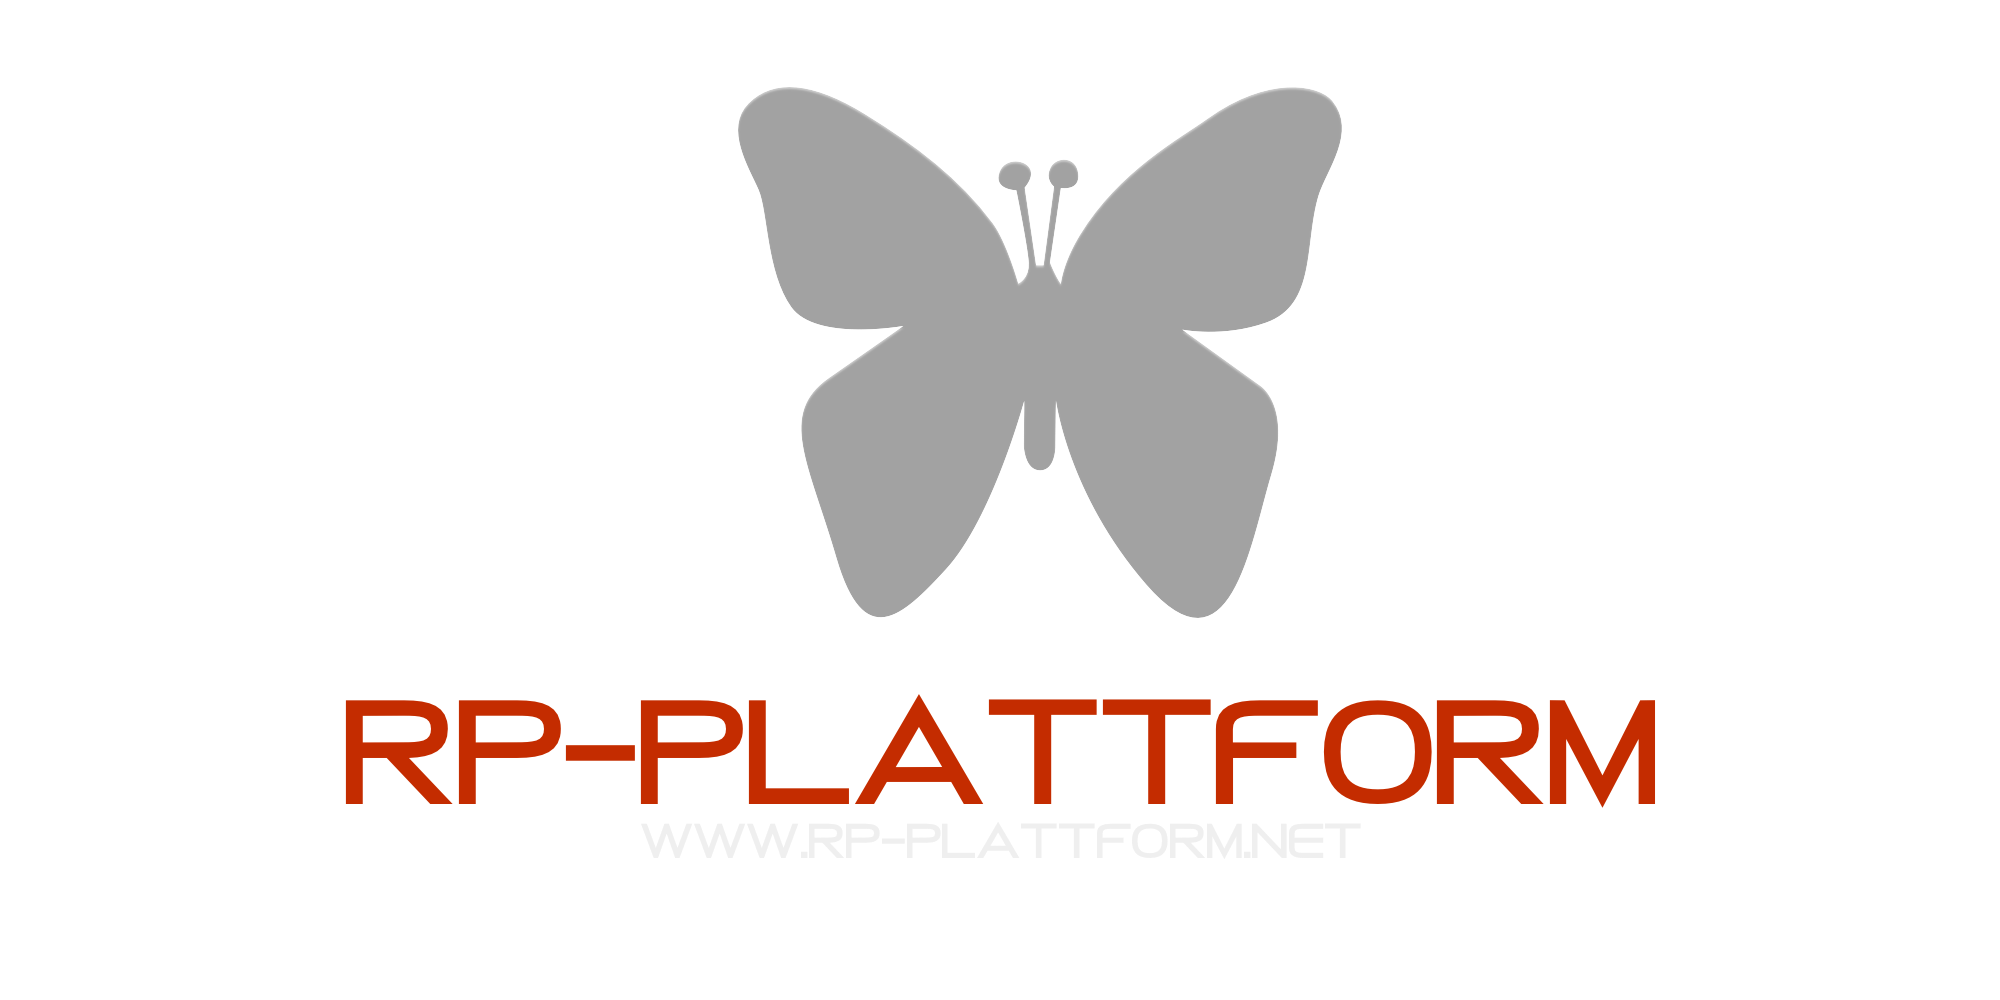 RP-PLATTFORM